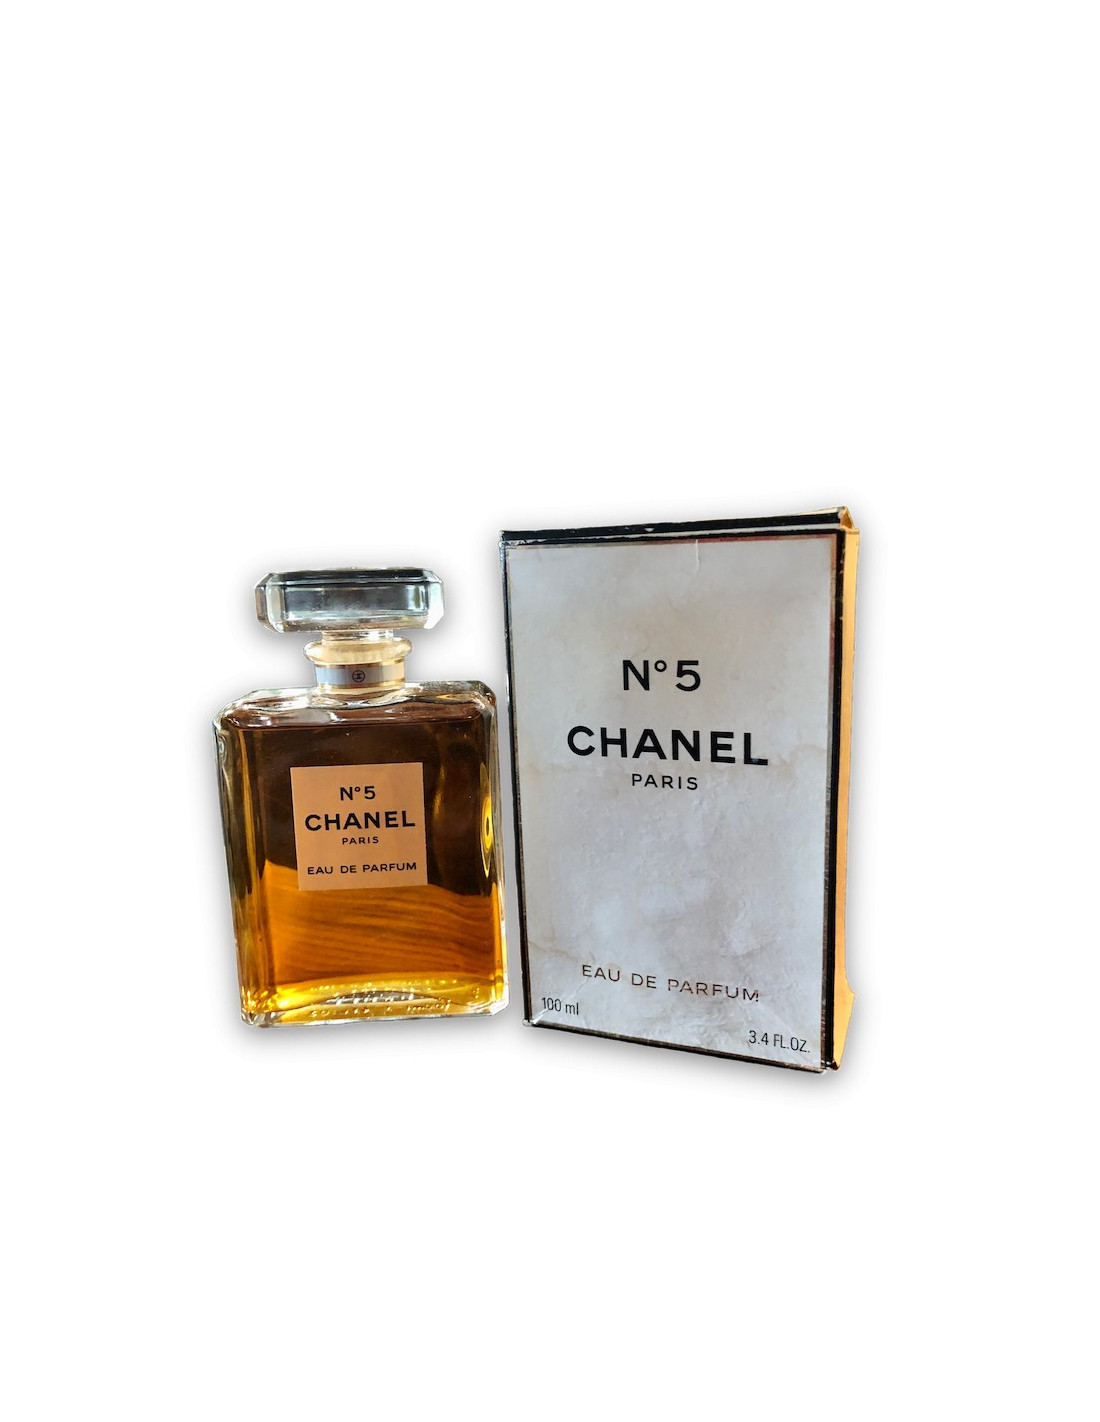 CHANEL PARIS N°5 Eau de Parfum 100ml, Full bottle